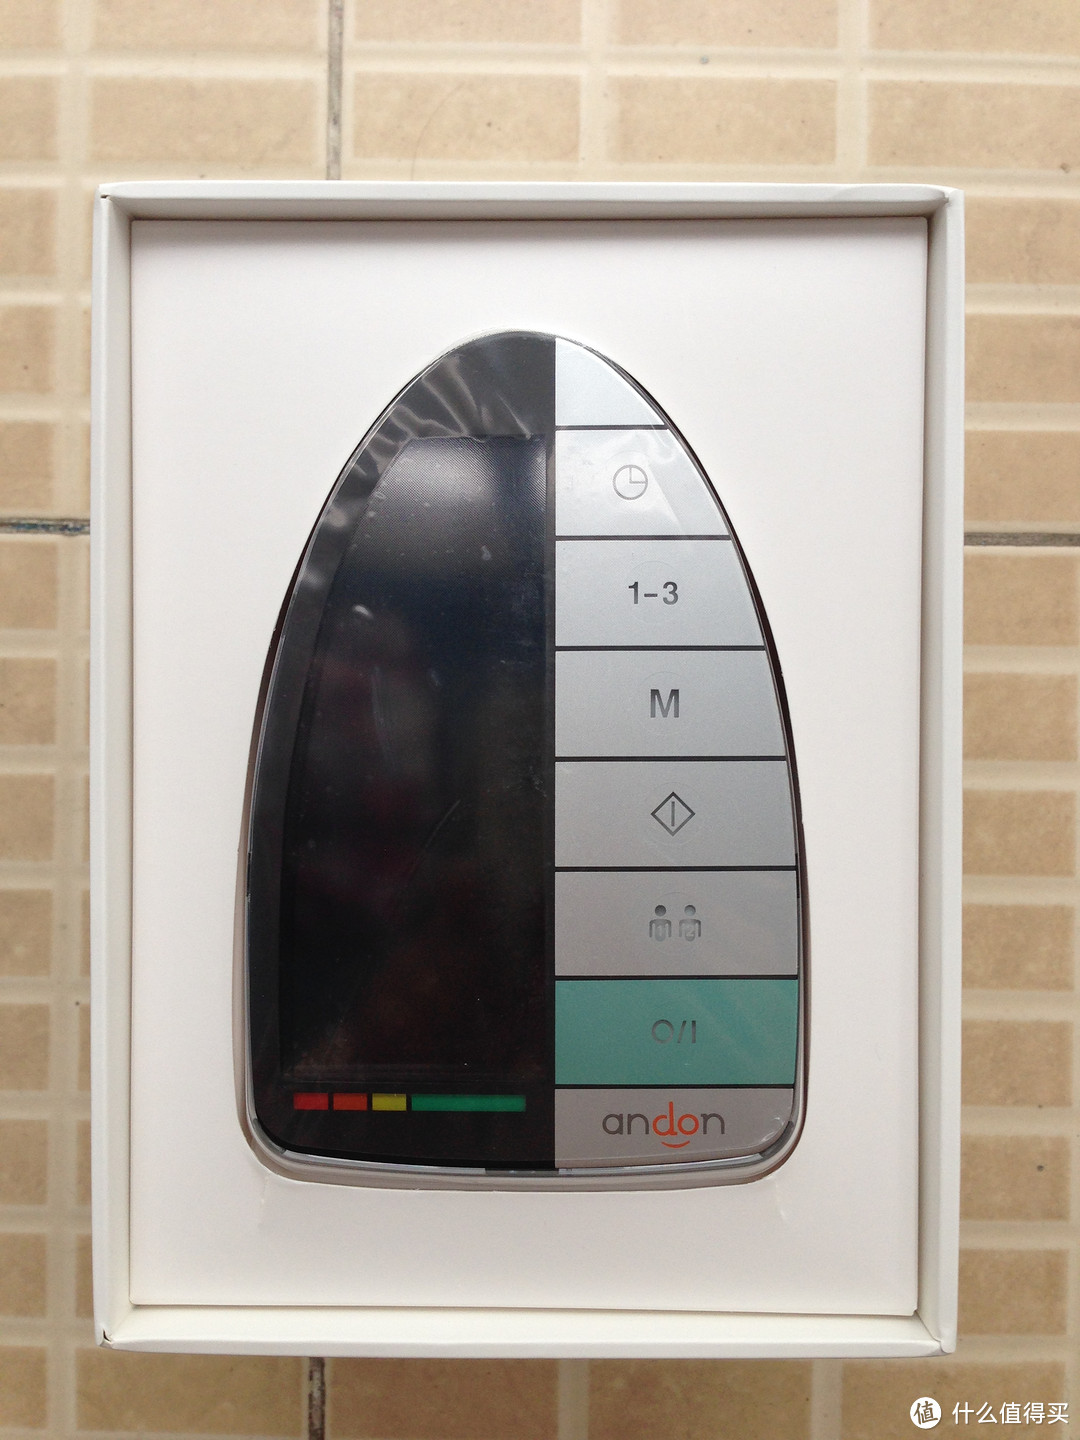 触屏是亮点 - 九安 KD-5008智能触控血压计测试报告